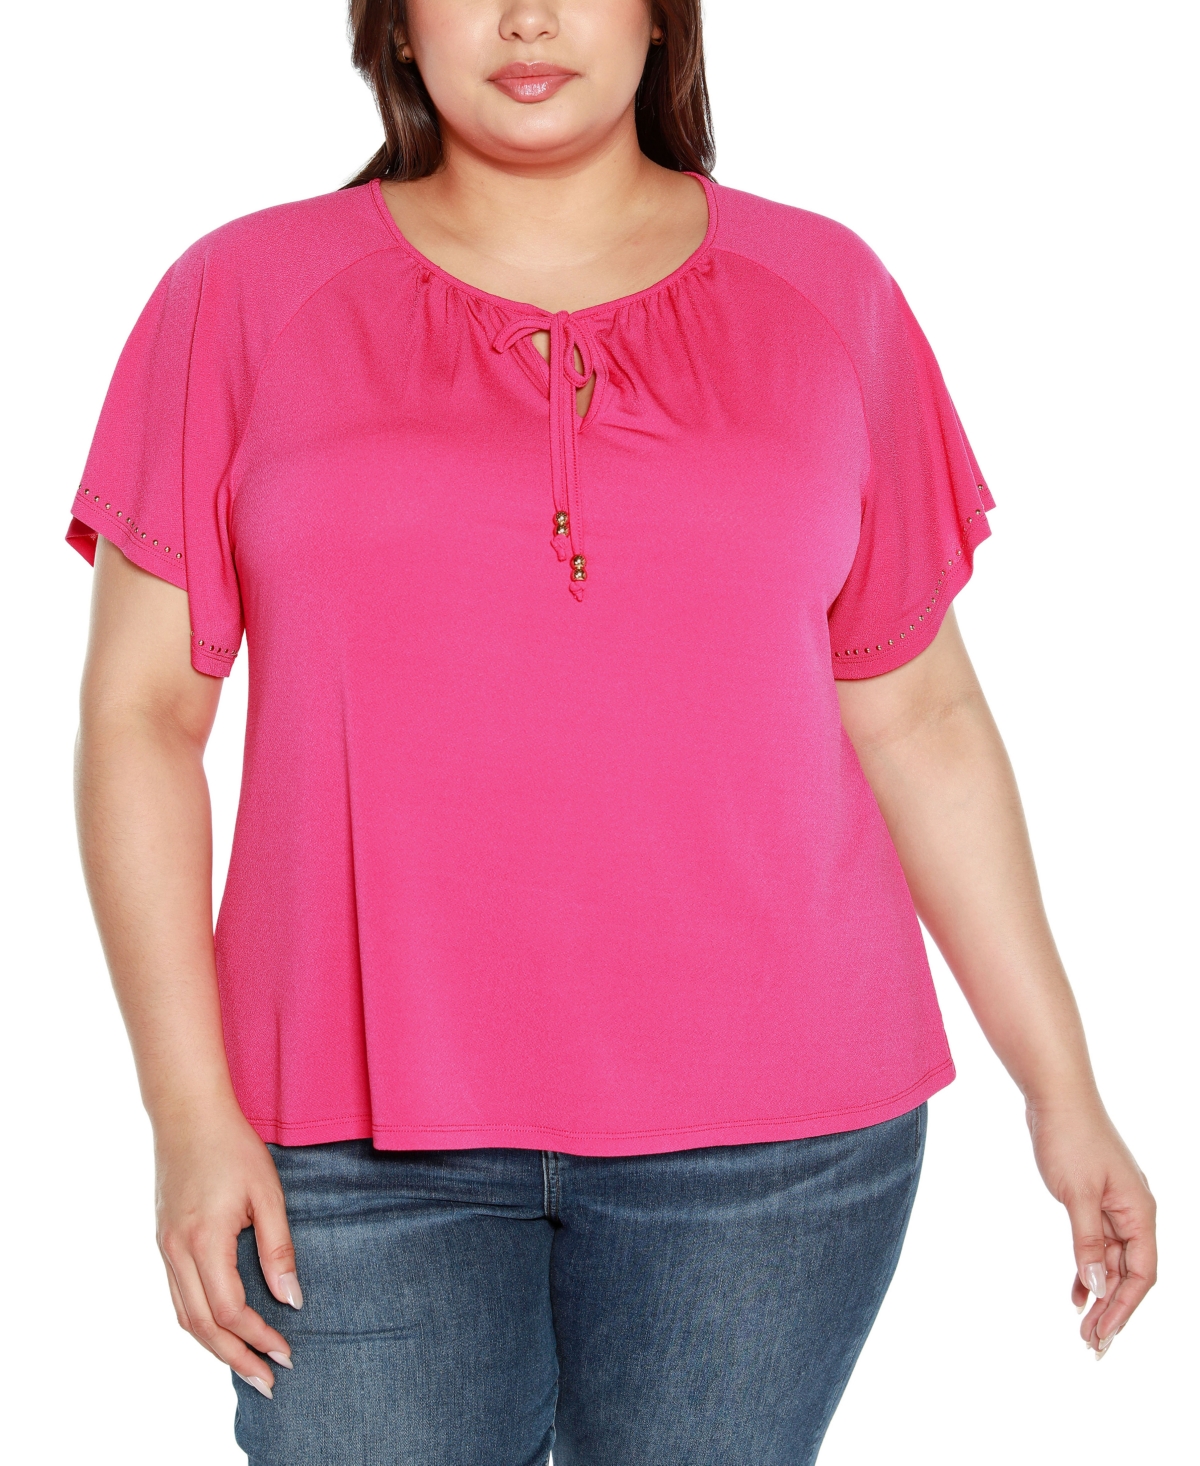 Black Label Plus Size Embellished Flutter Sleeve Knit Top - Petal Pink